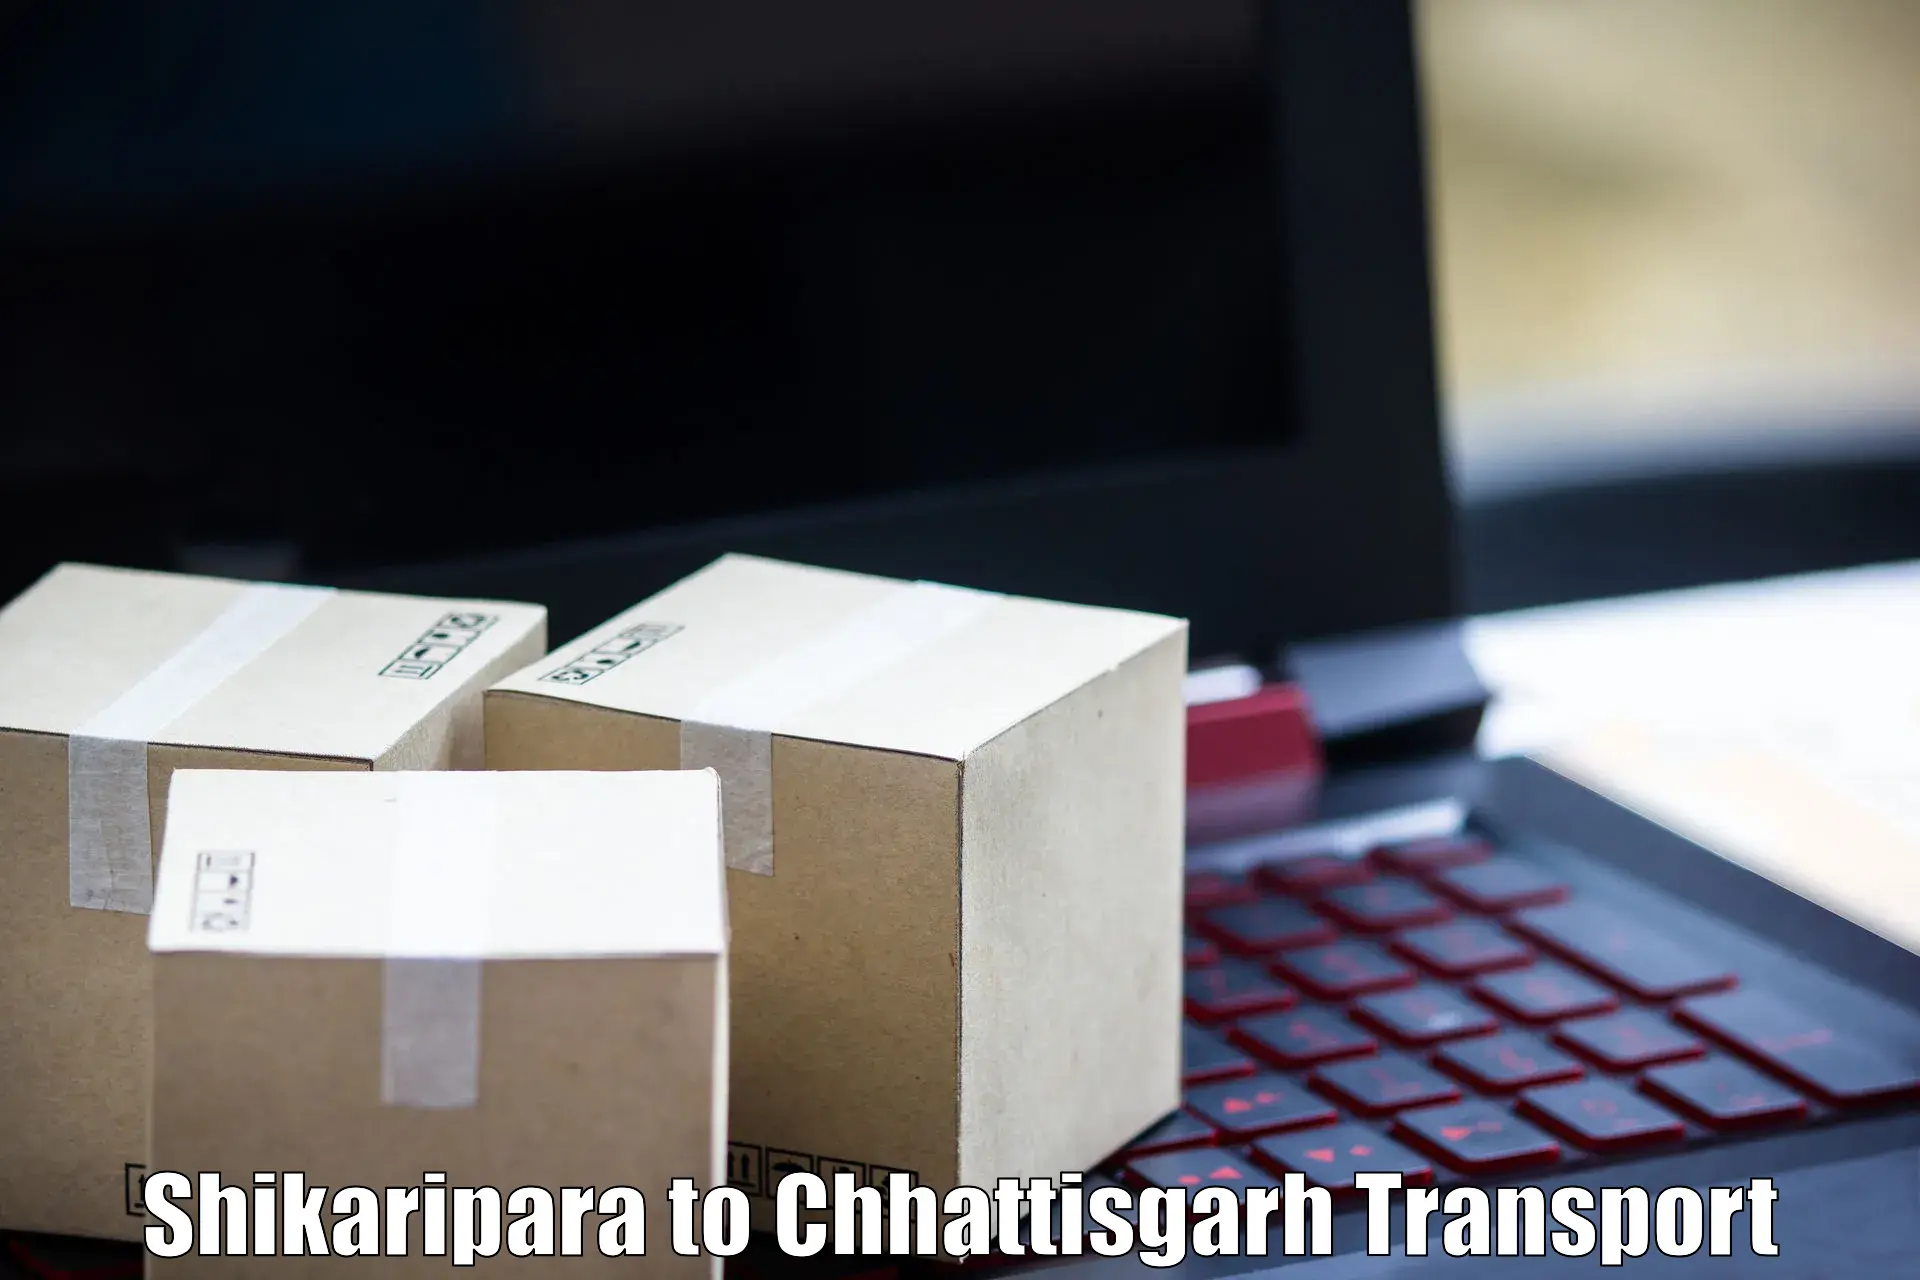 Shipping partner Shikaripara to NIT Raipur